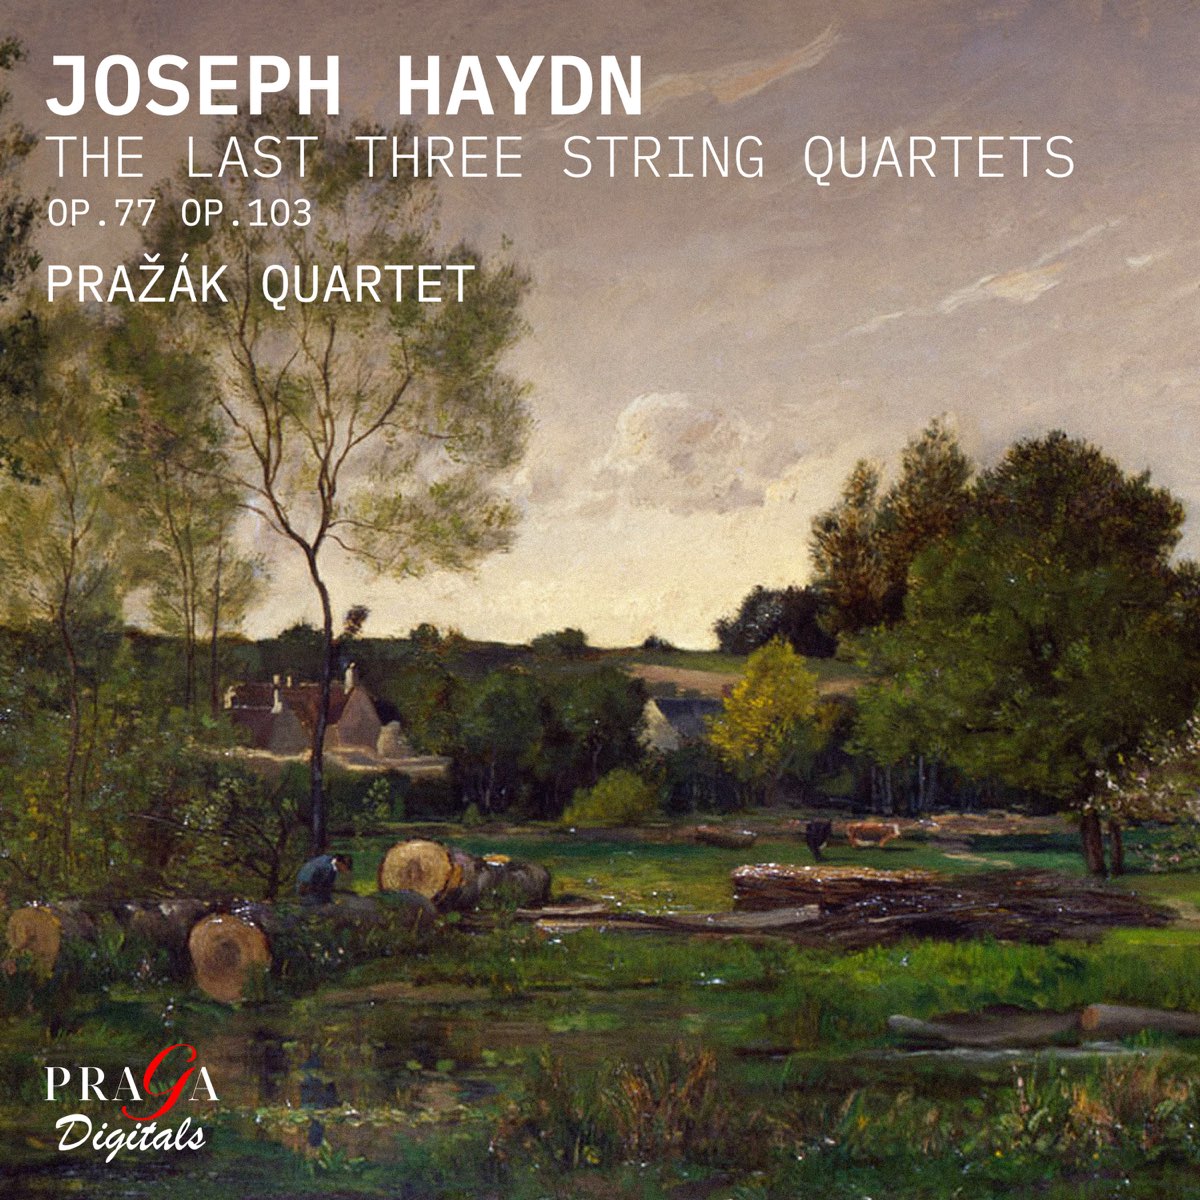 Prazak Quartet – Haydn: The Last Three String Quartets (2021) [FLAC 24bit/96kHz]